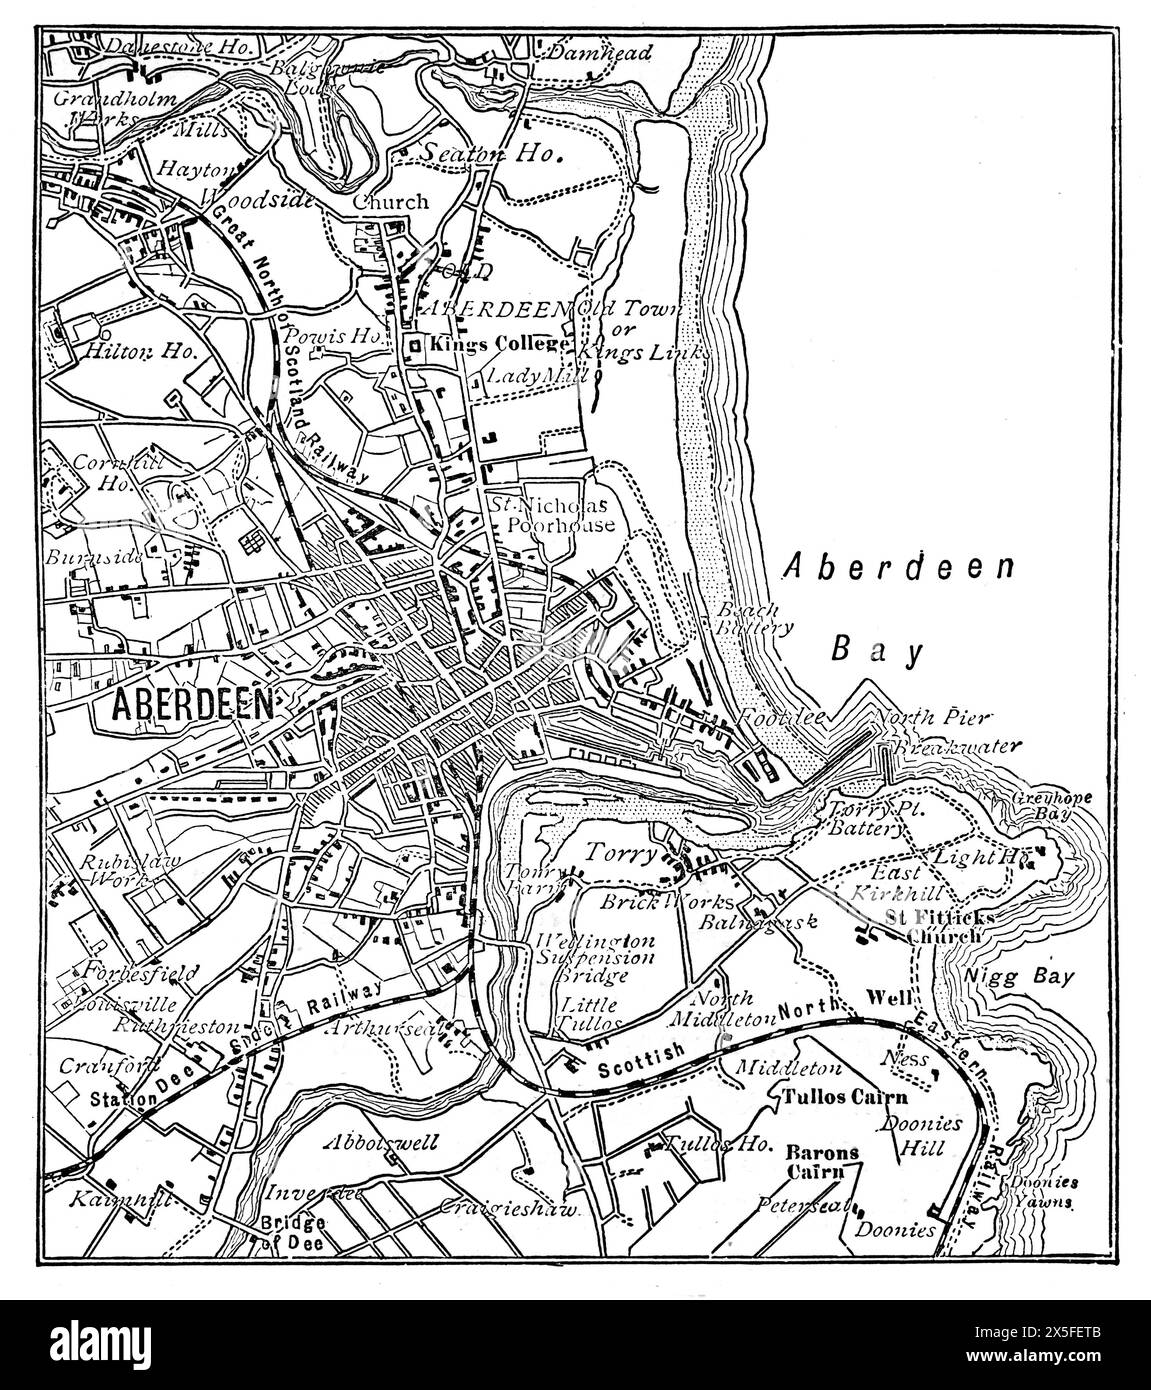 Karte von Aberdeen, Schottland, wie sie Ende des 19. Jahrhunderts erschien. Schwarz-weiß-Illustration aus unserem eigenen Land Band III, veröffentlicht von Cassell, Petter, Galpin & Co. Im späten 19. Jahrhundert. Stockfoto